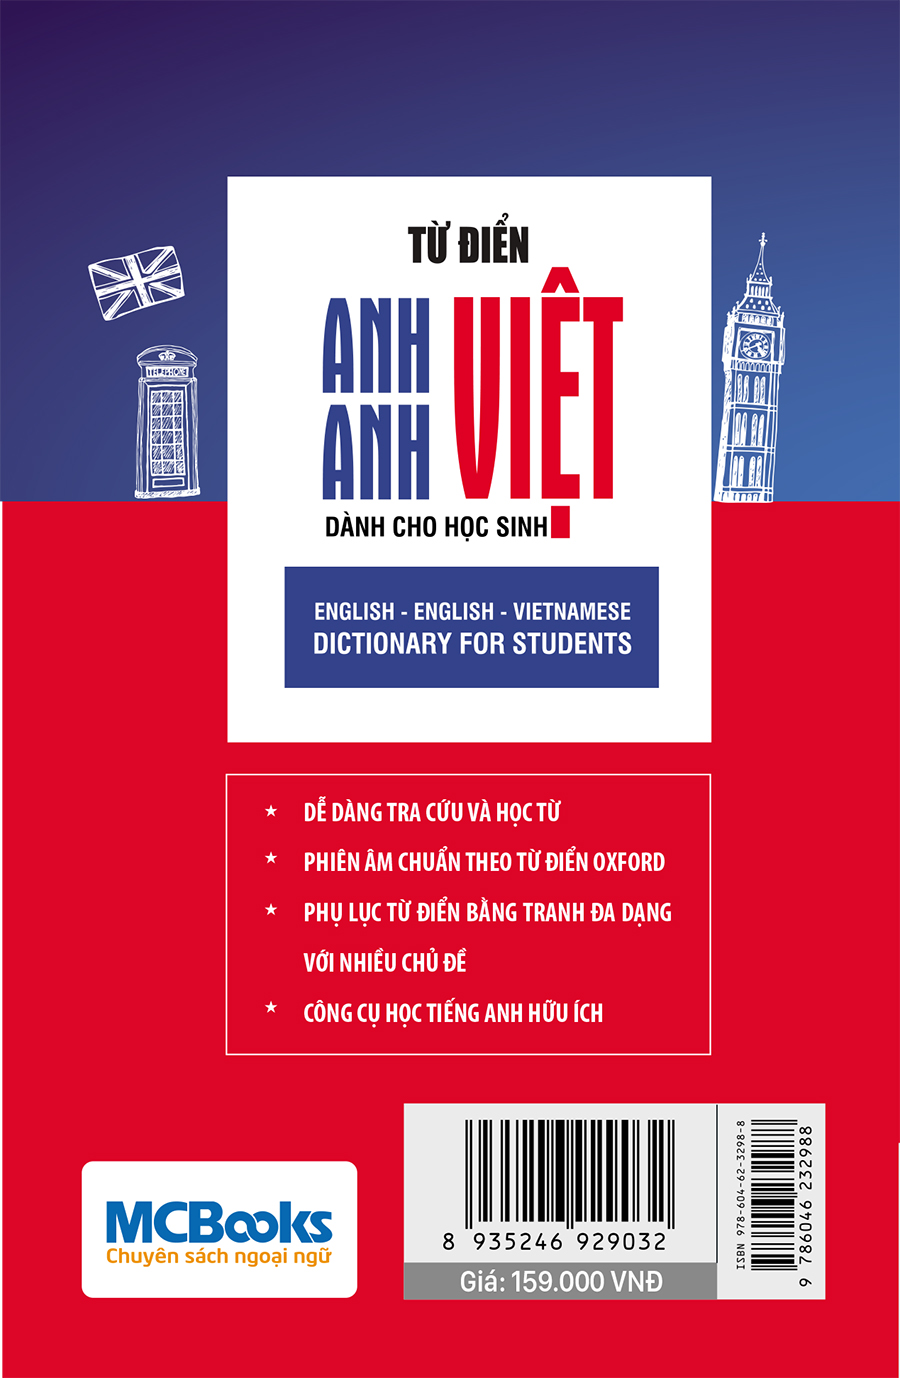 Từ điển Anh – Anh- Việt dành cho học sinh bìa sau